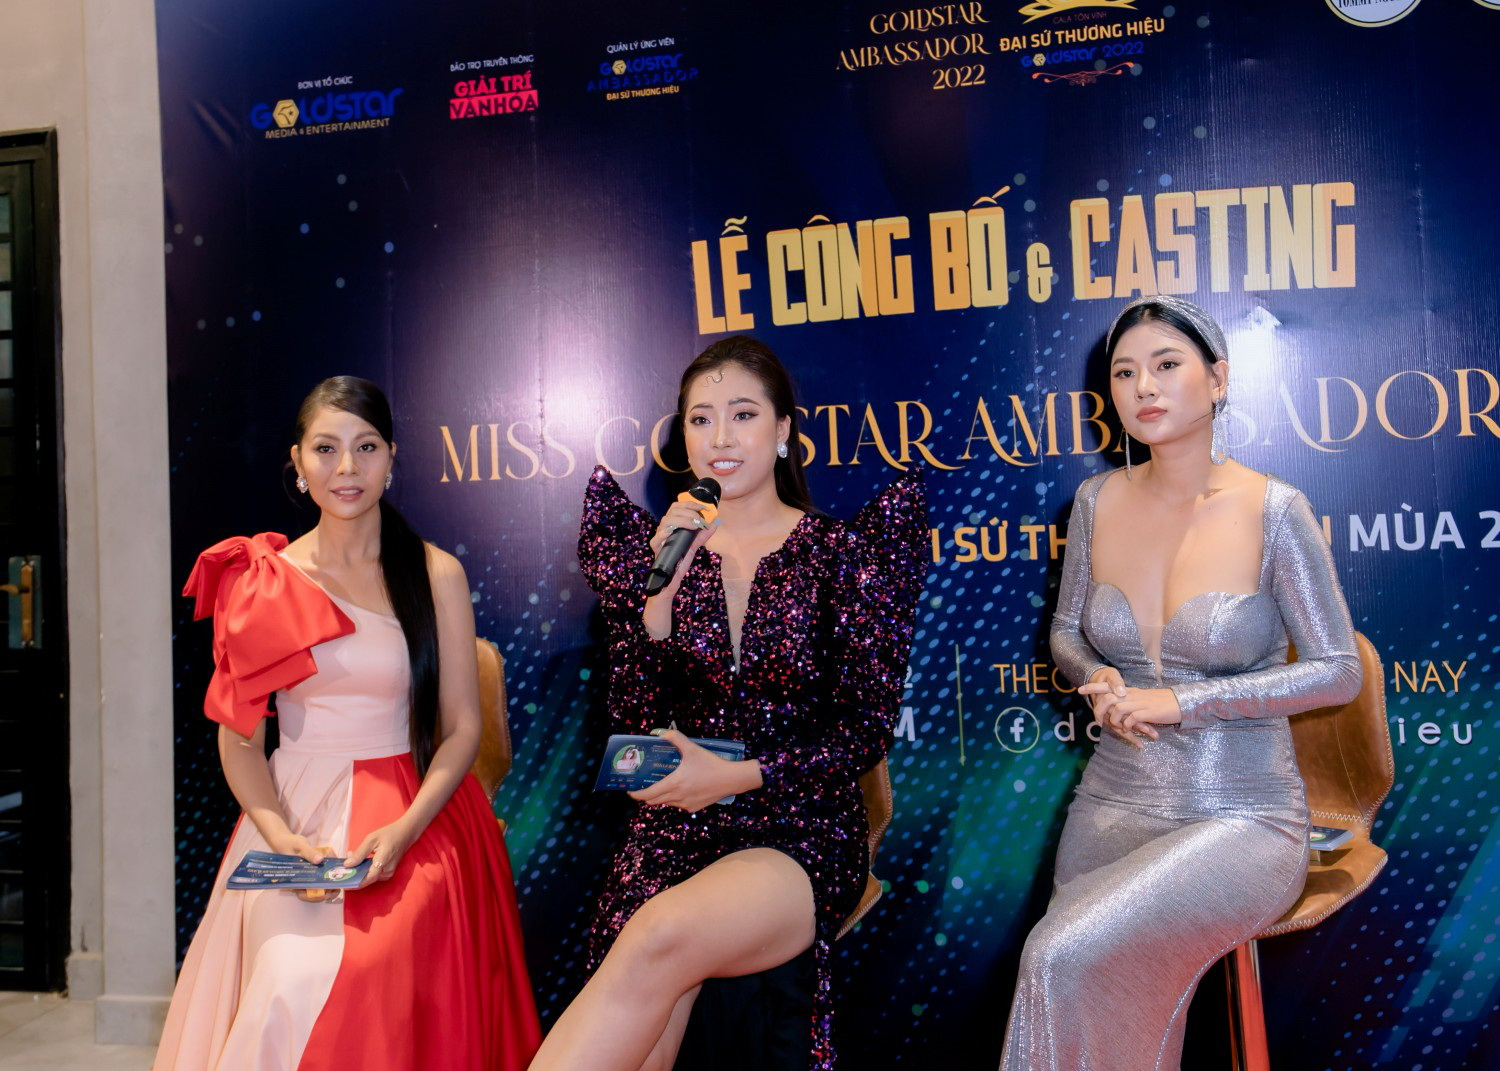 Từ trái sang: Hoa hậu Hồng Vân, Hoa hậu Tuyết Xuân và diễn viên Như Mây là 3 HLV casting tuyển chọn Đại sứ thương hiệu - Miss GoldStar Ambassador 2022